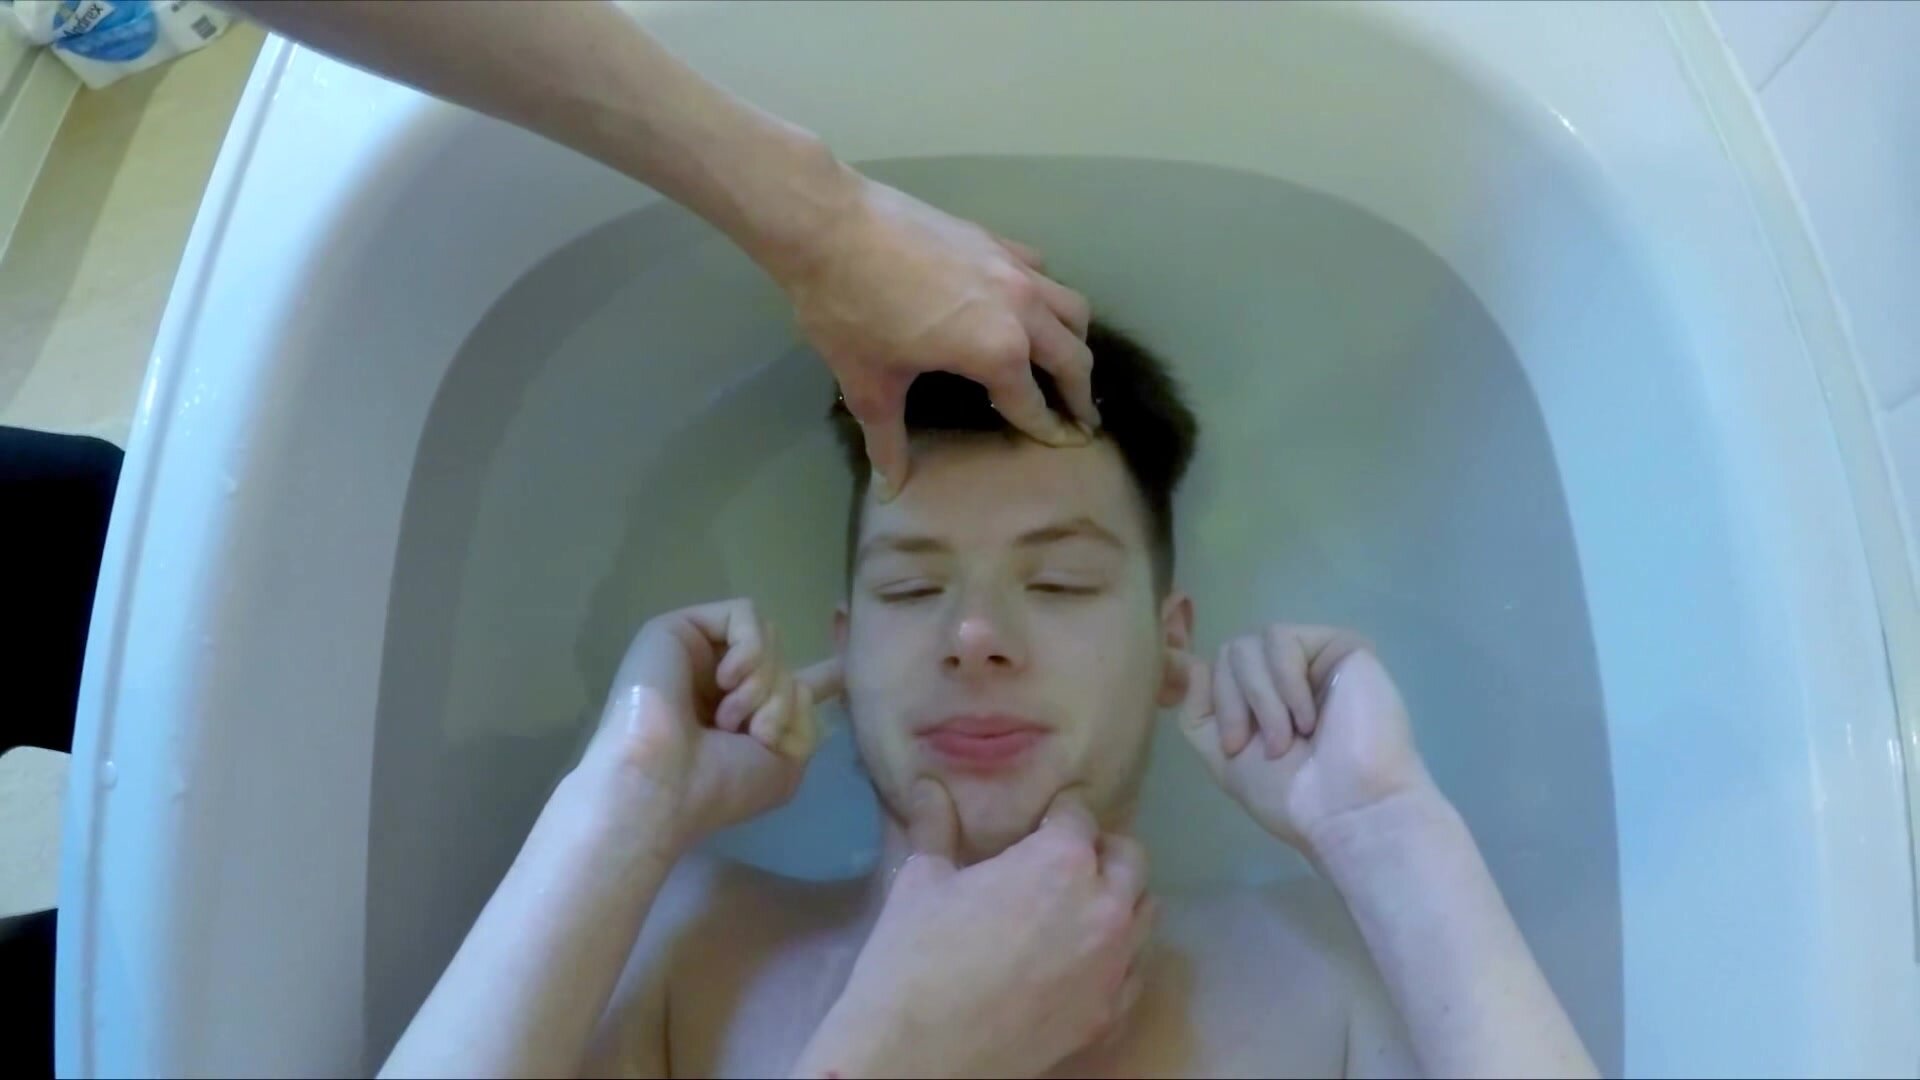 Underwater challenge in bathtub